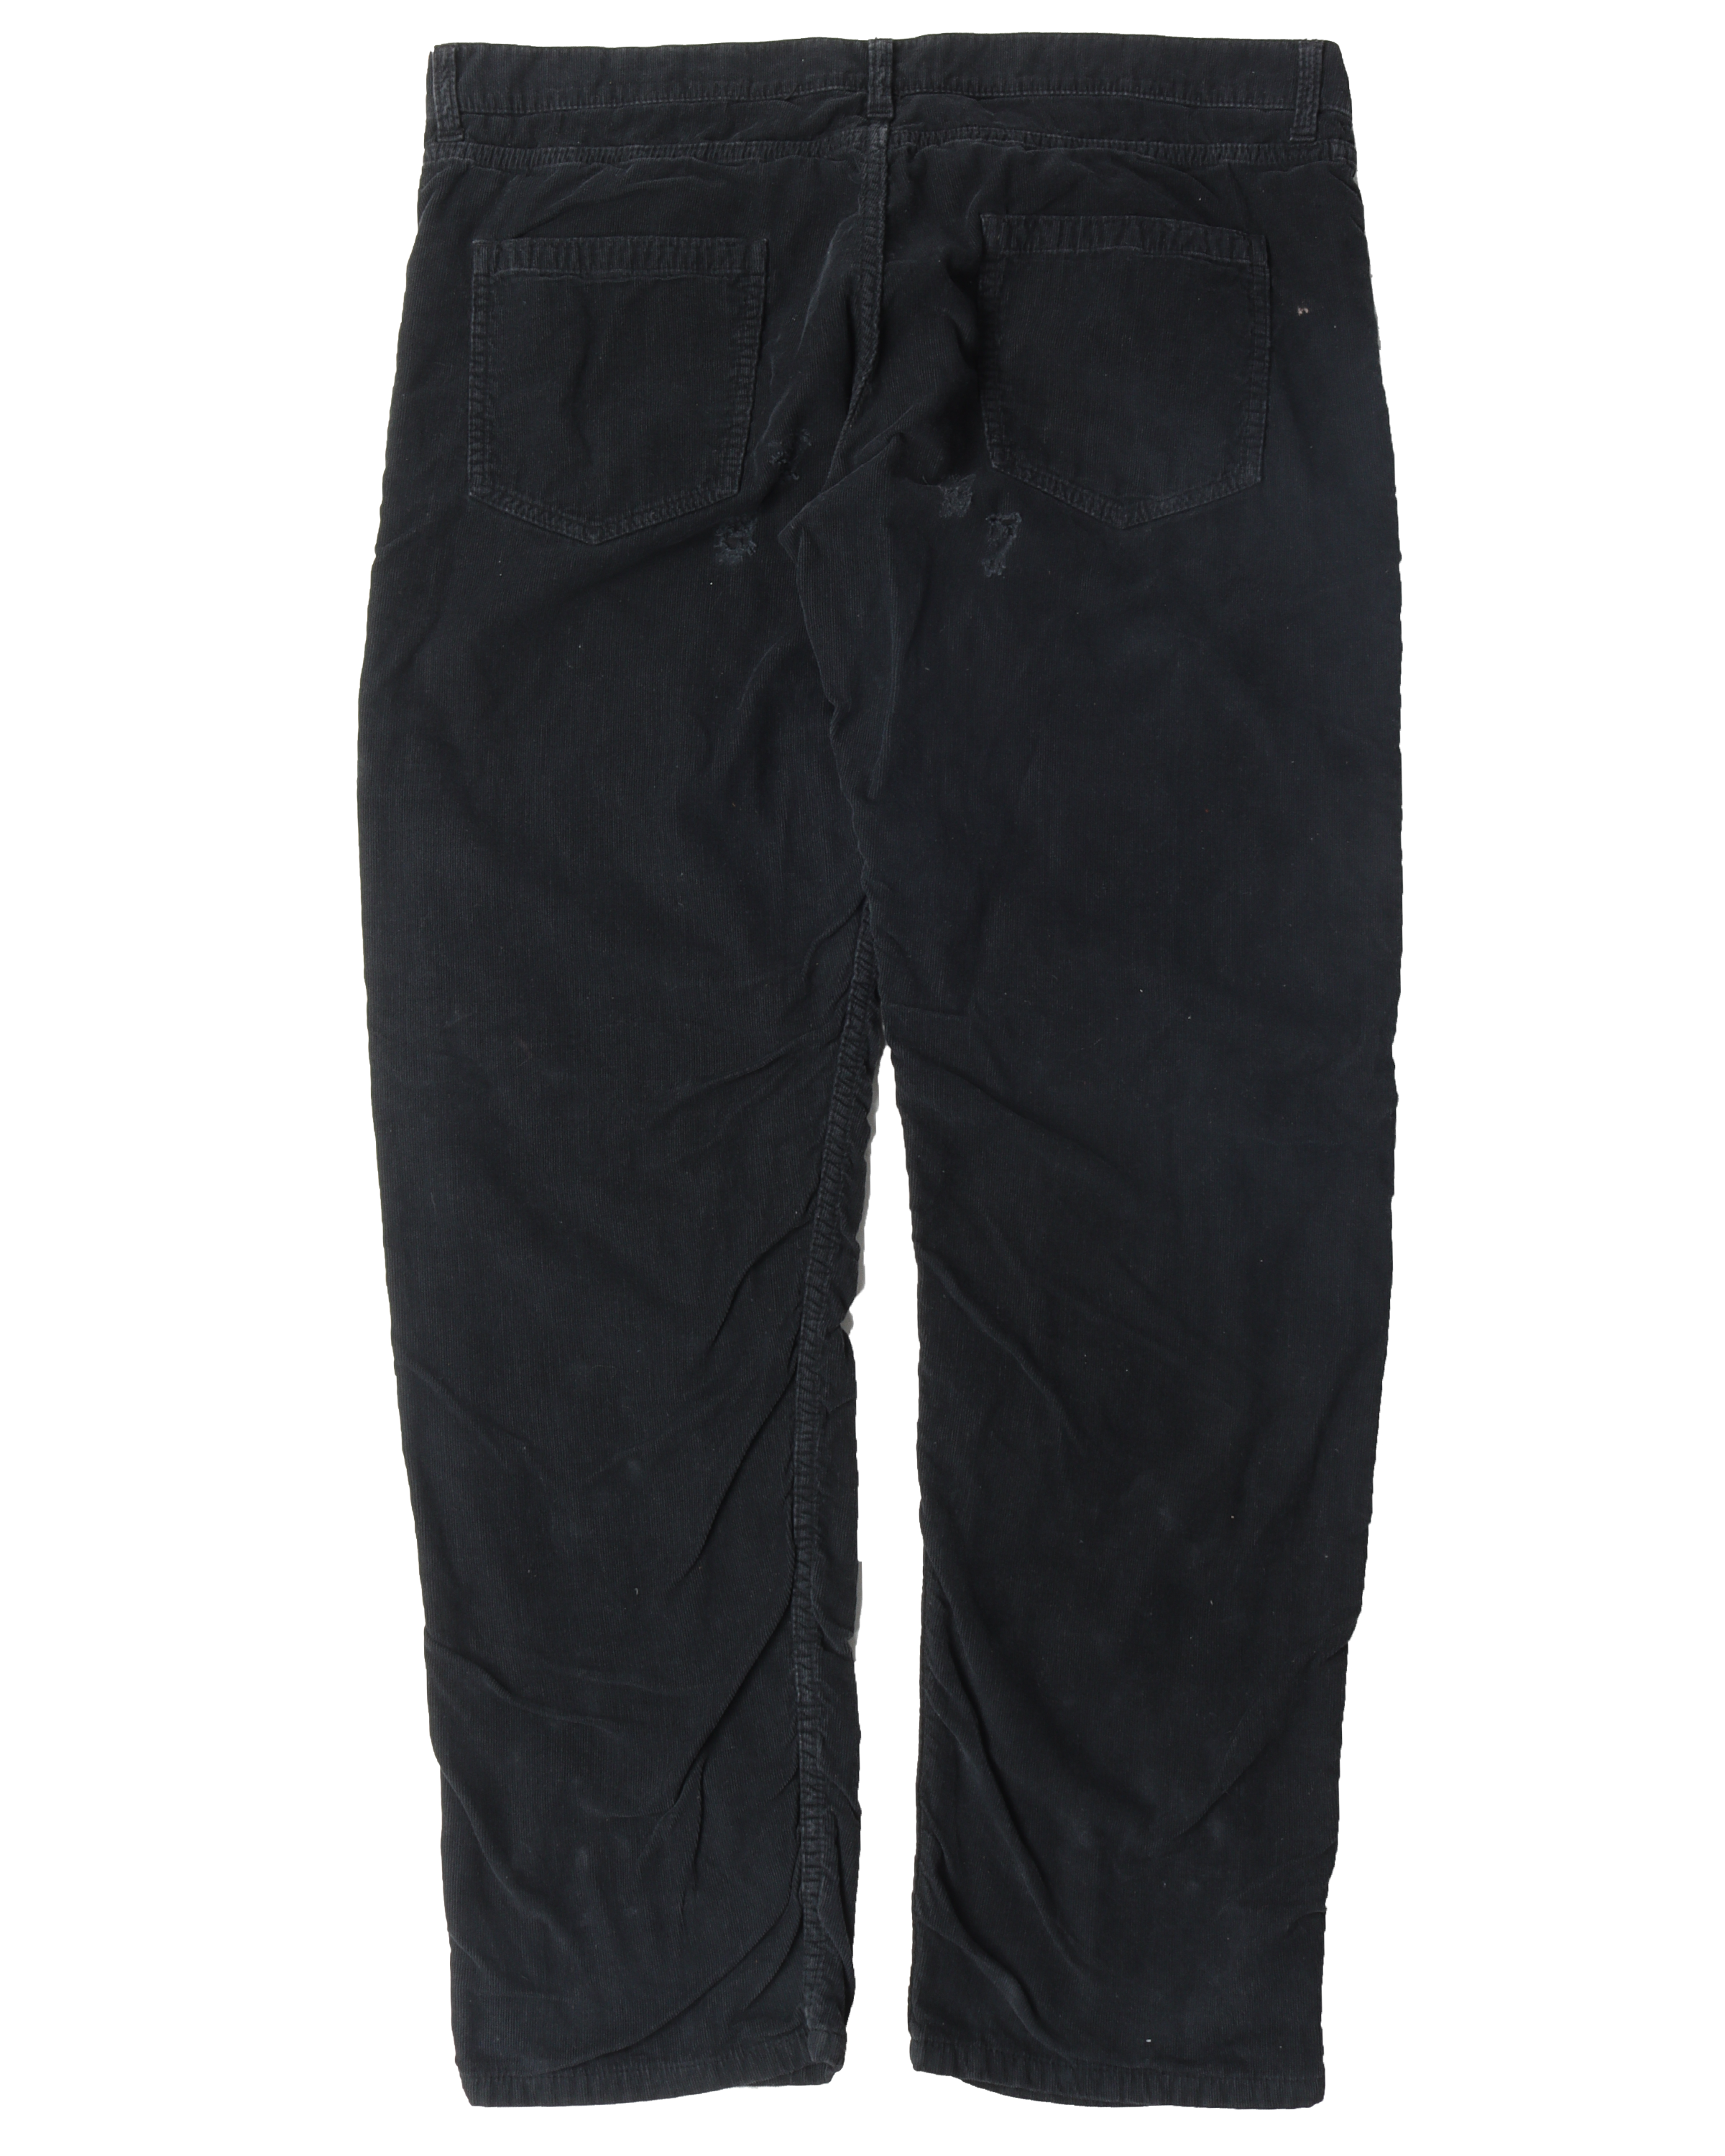 Distressed/Wrinkled Corduroy Pants